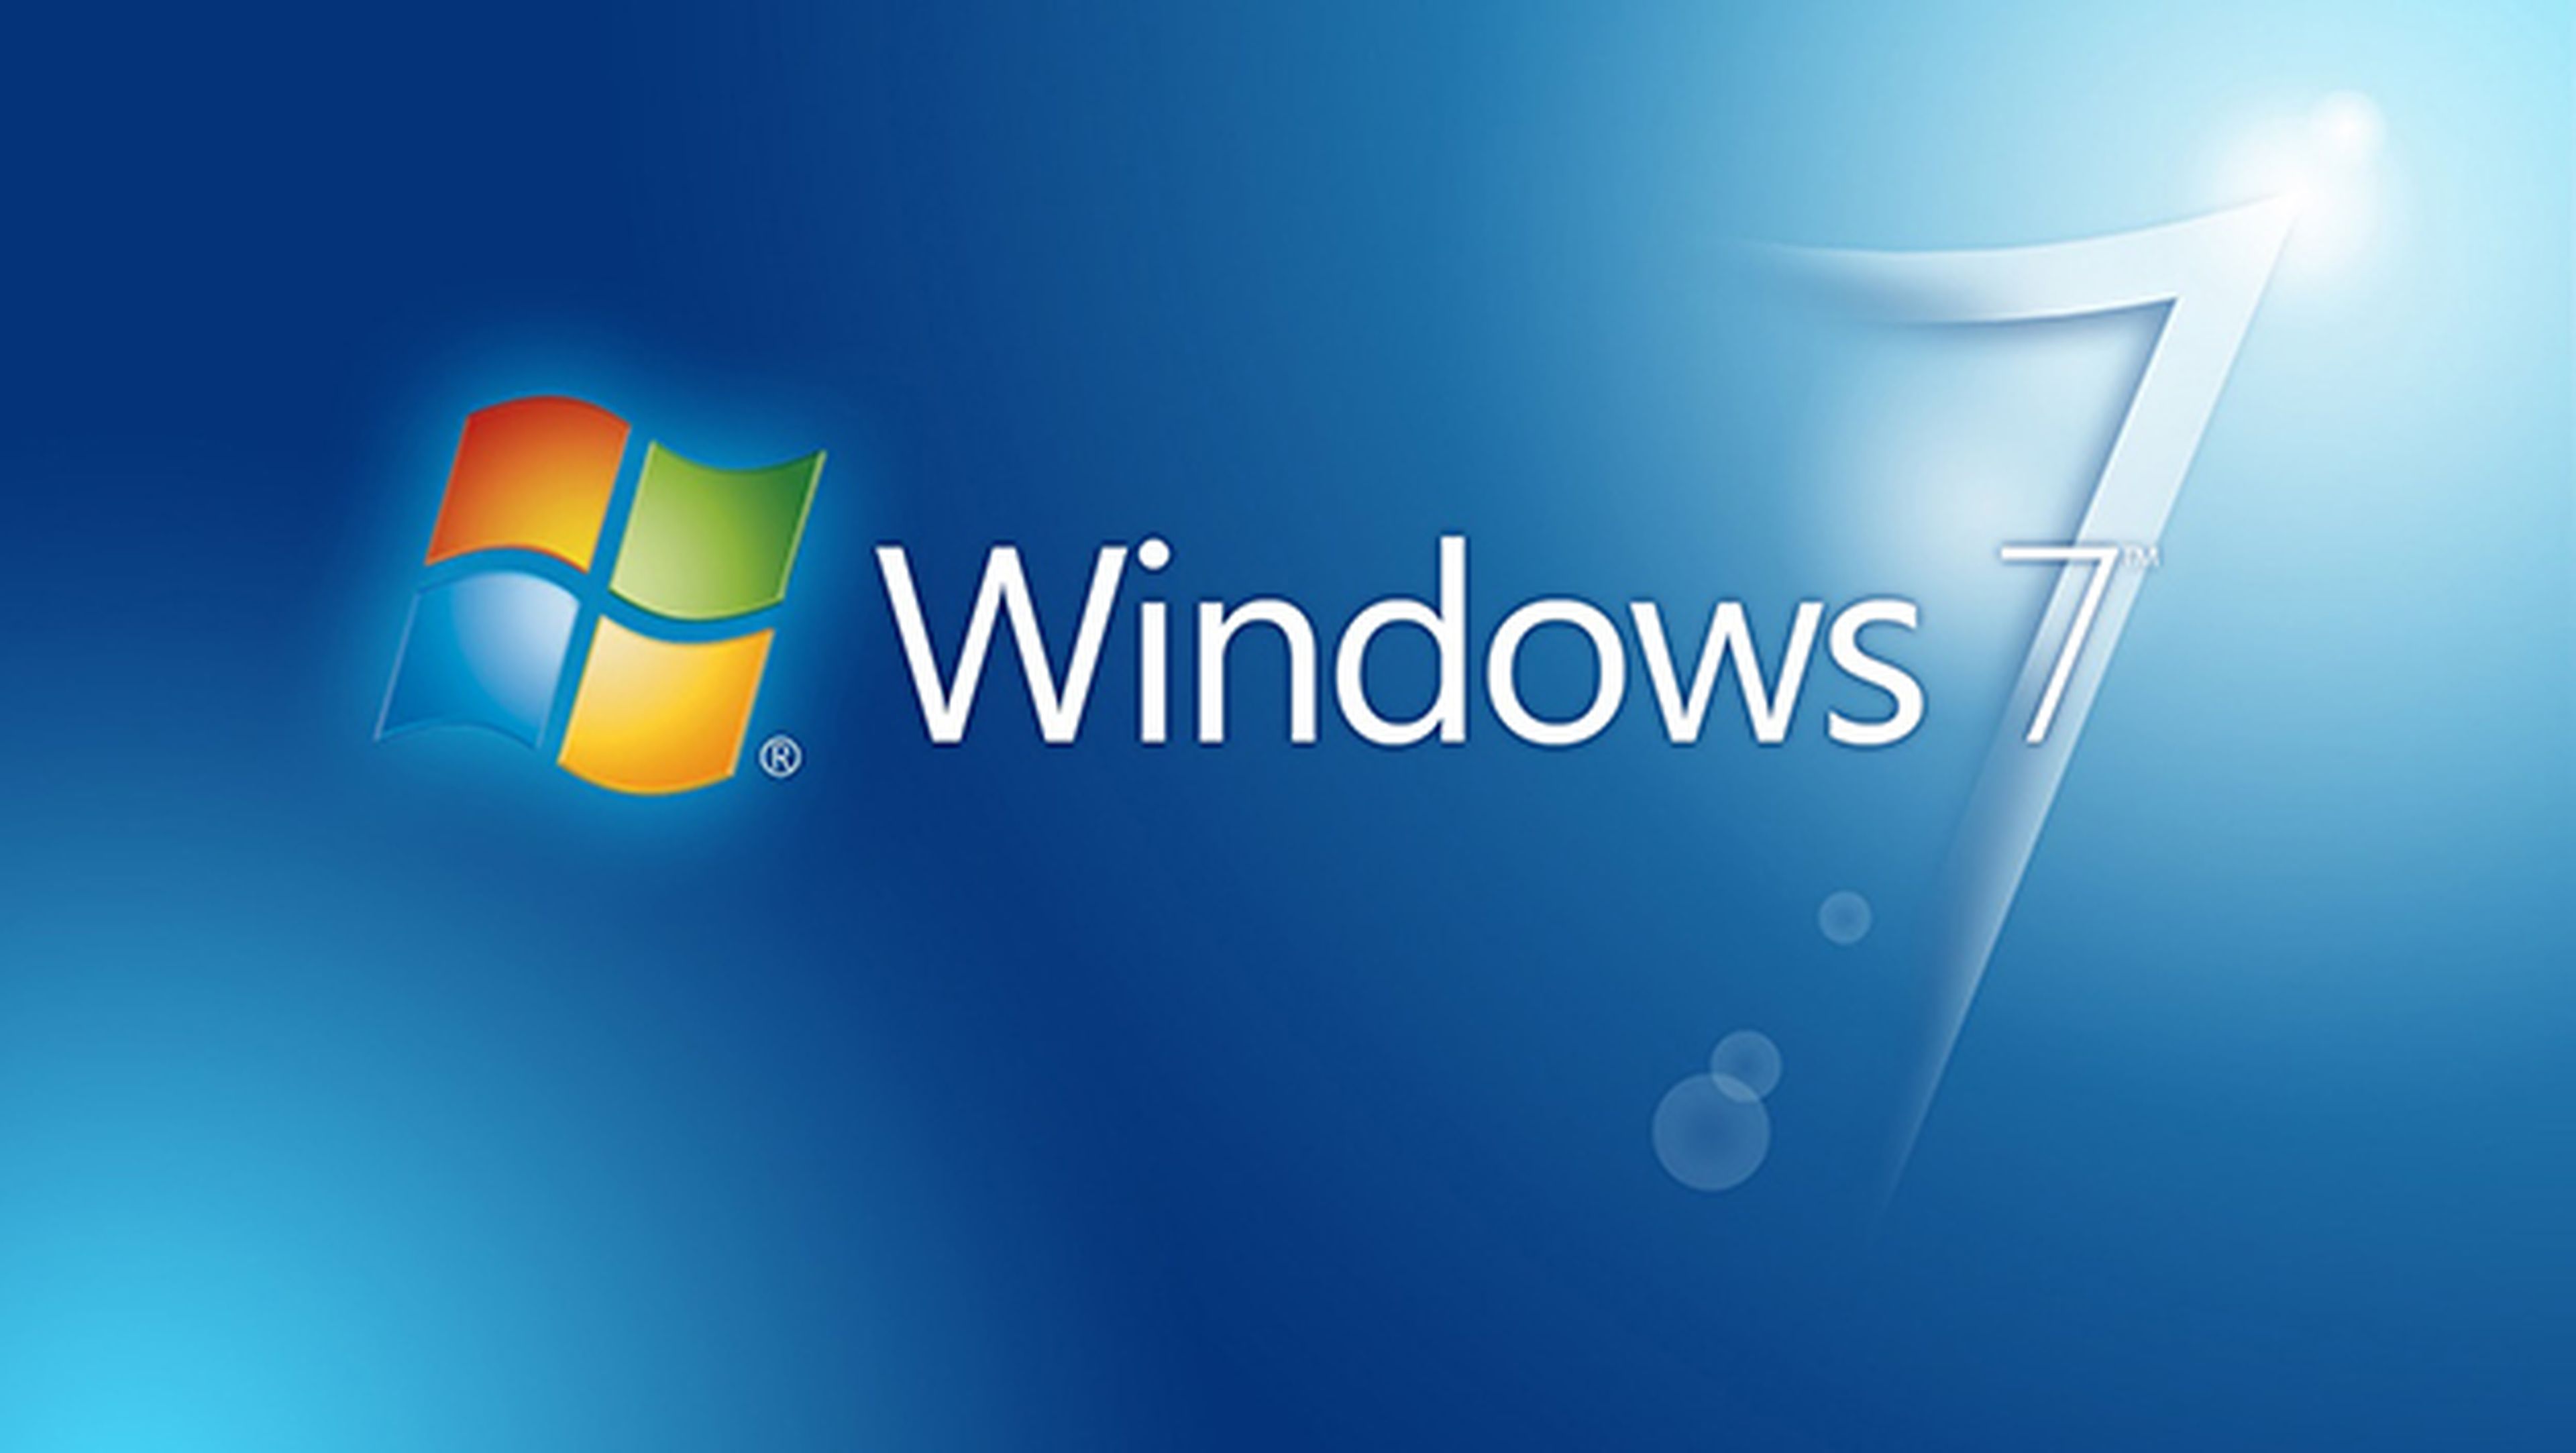 Usuarios de Windows 7, los más afectados por WannaCry